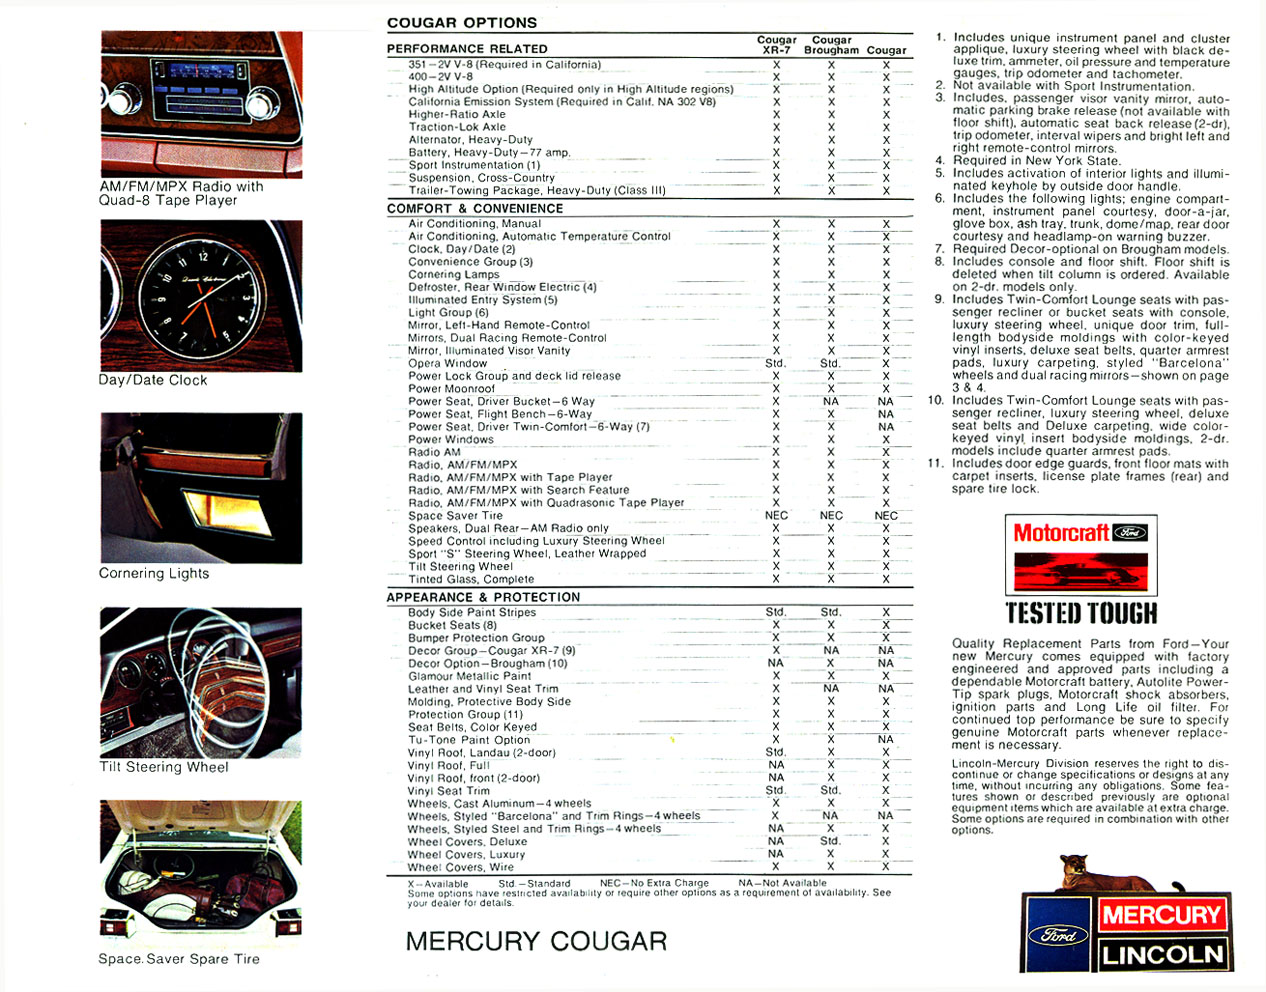 1977 Mercury Cougar Brochure Page 4